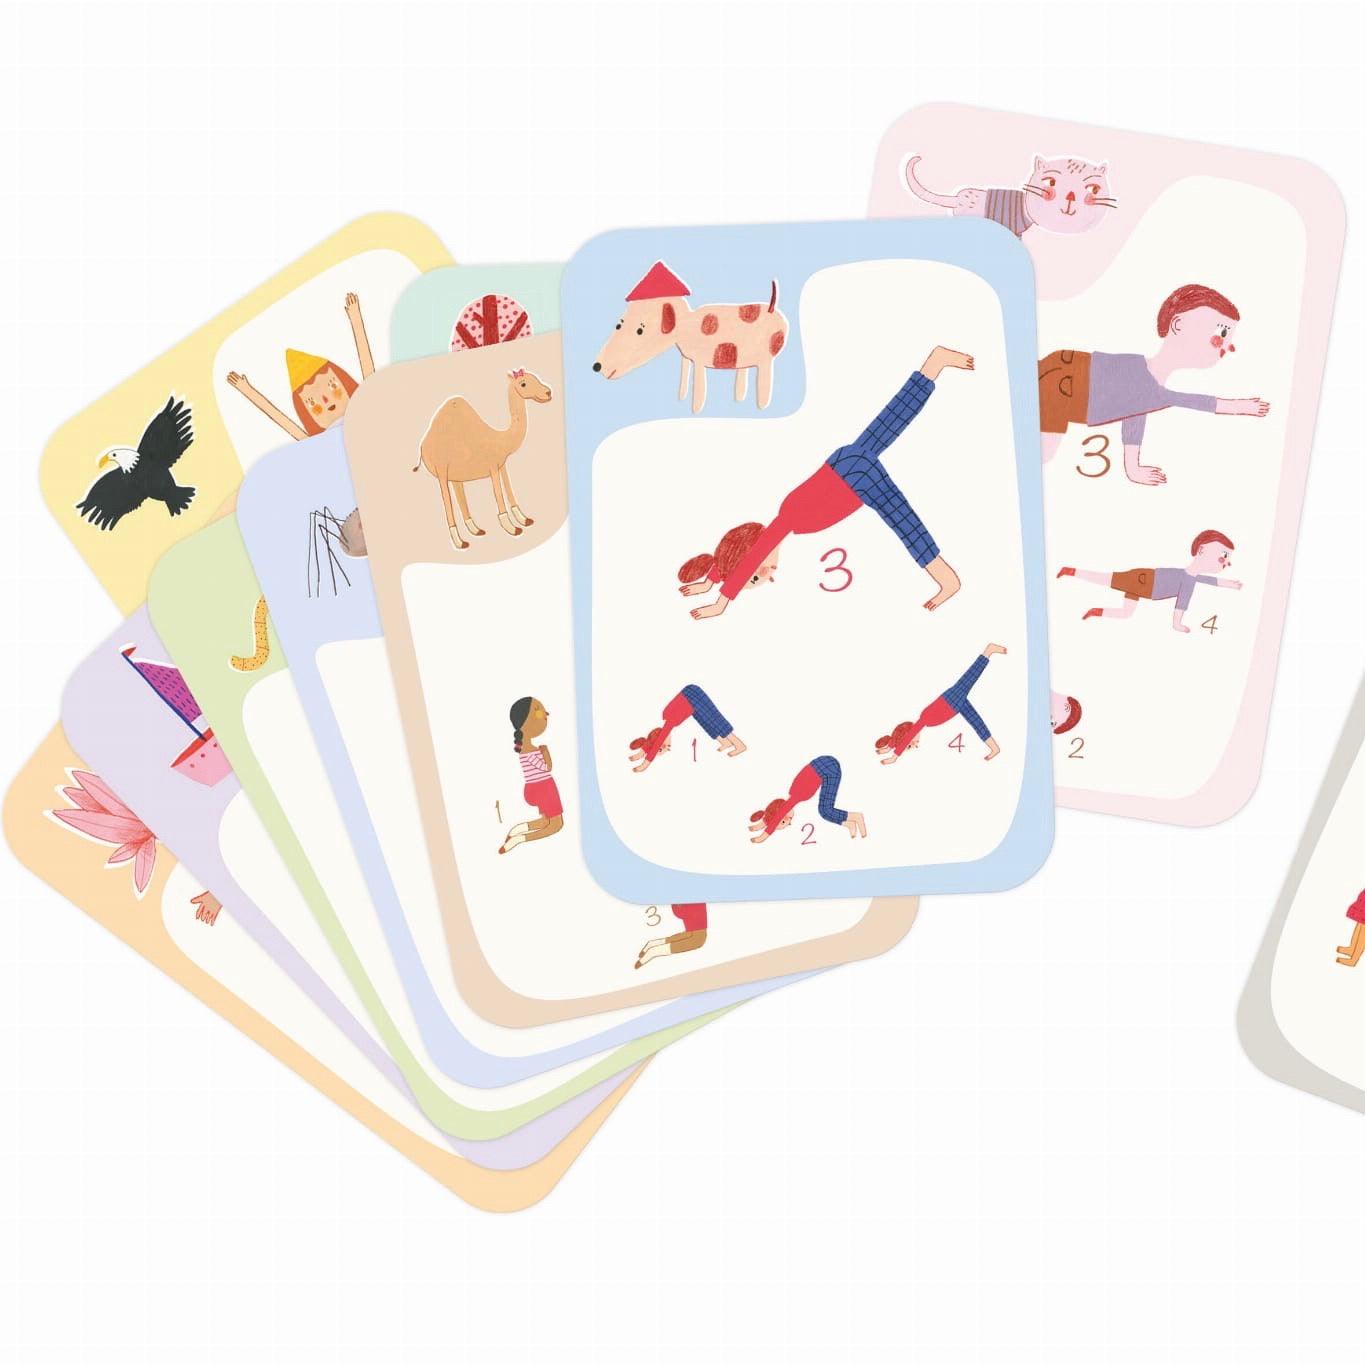 Buki: Yoga 4's card game